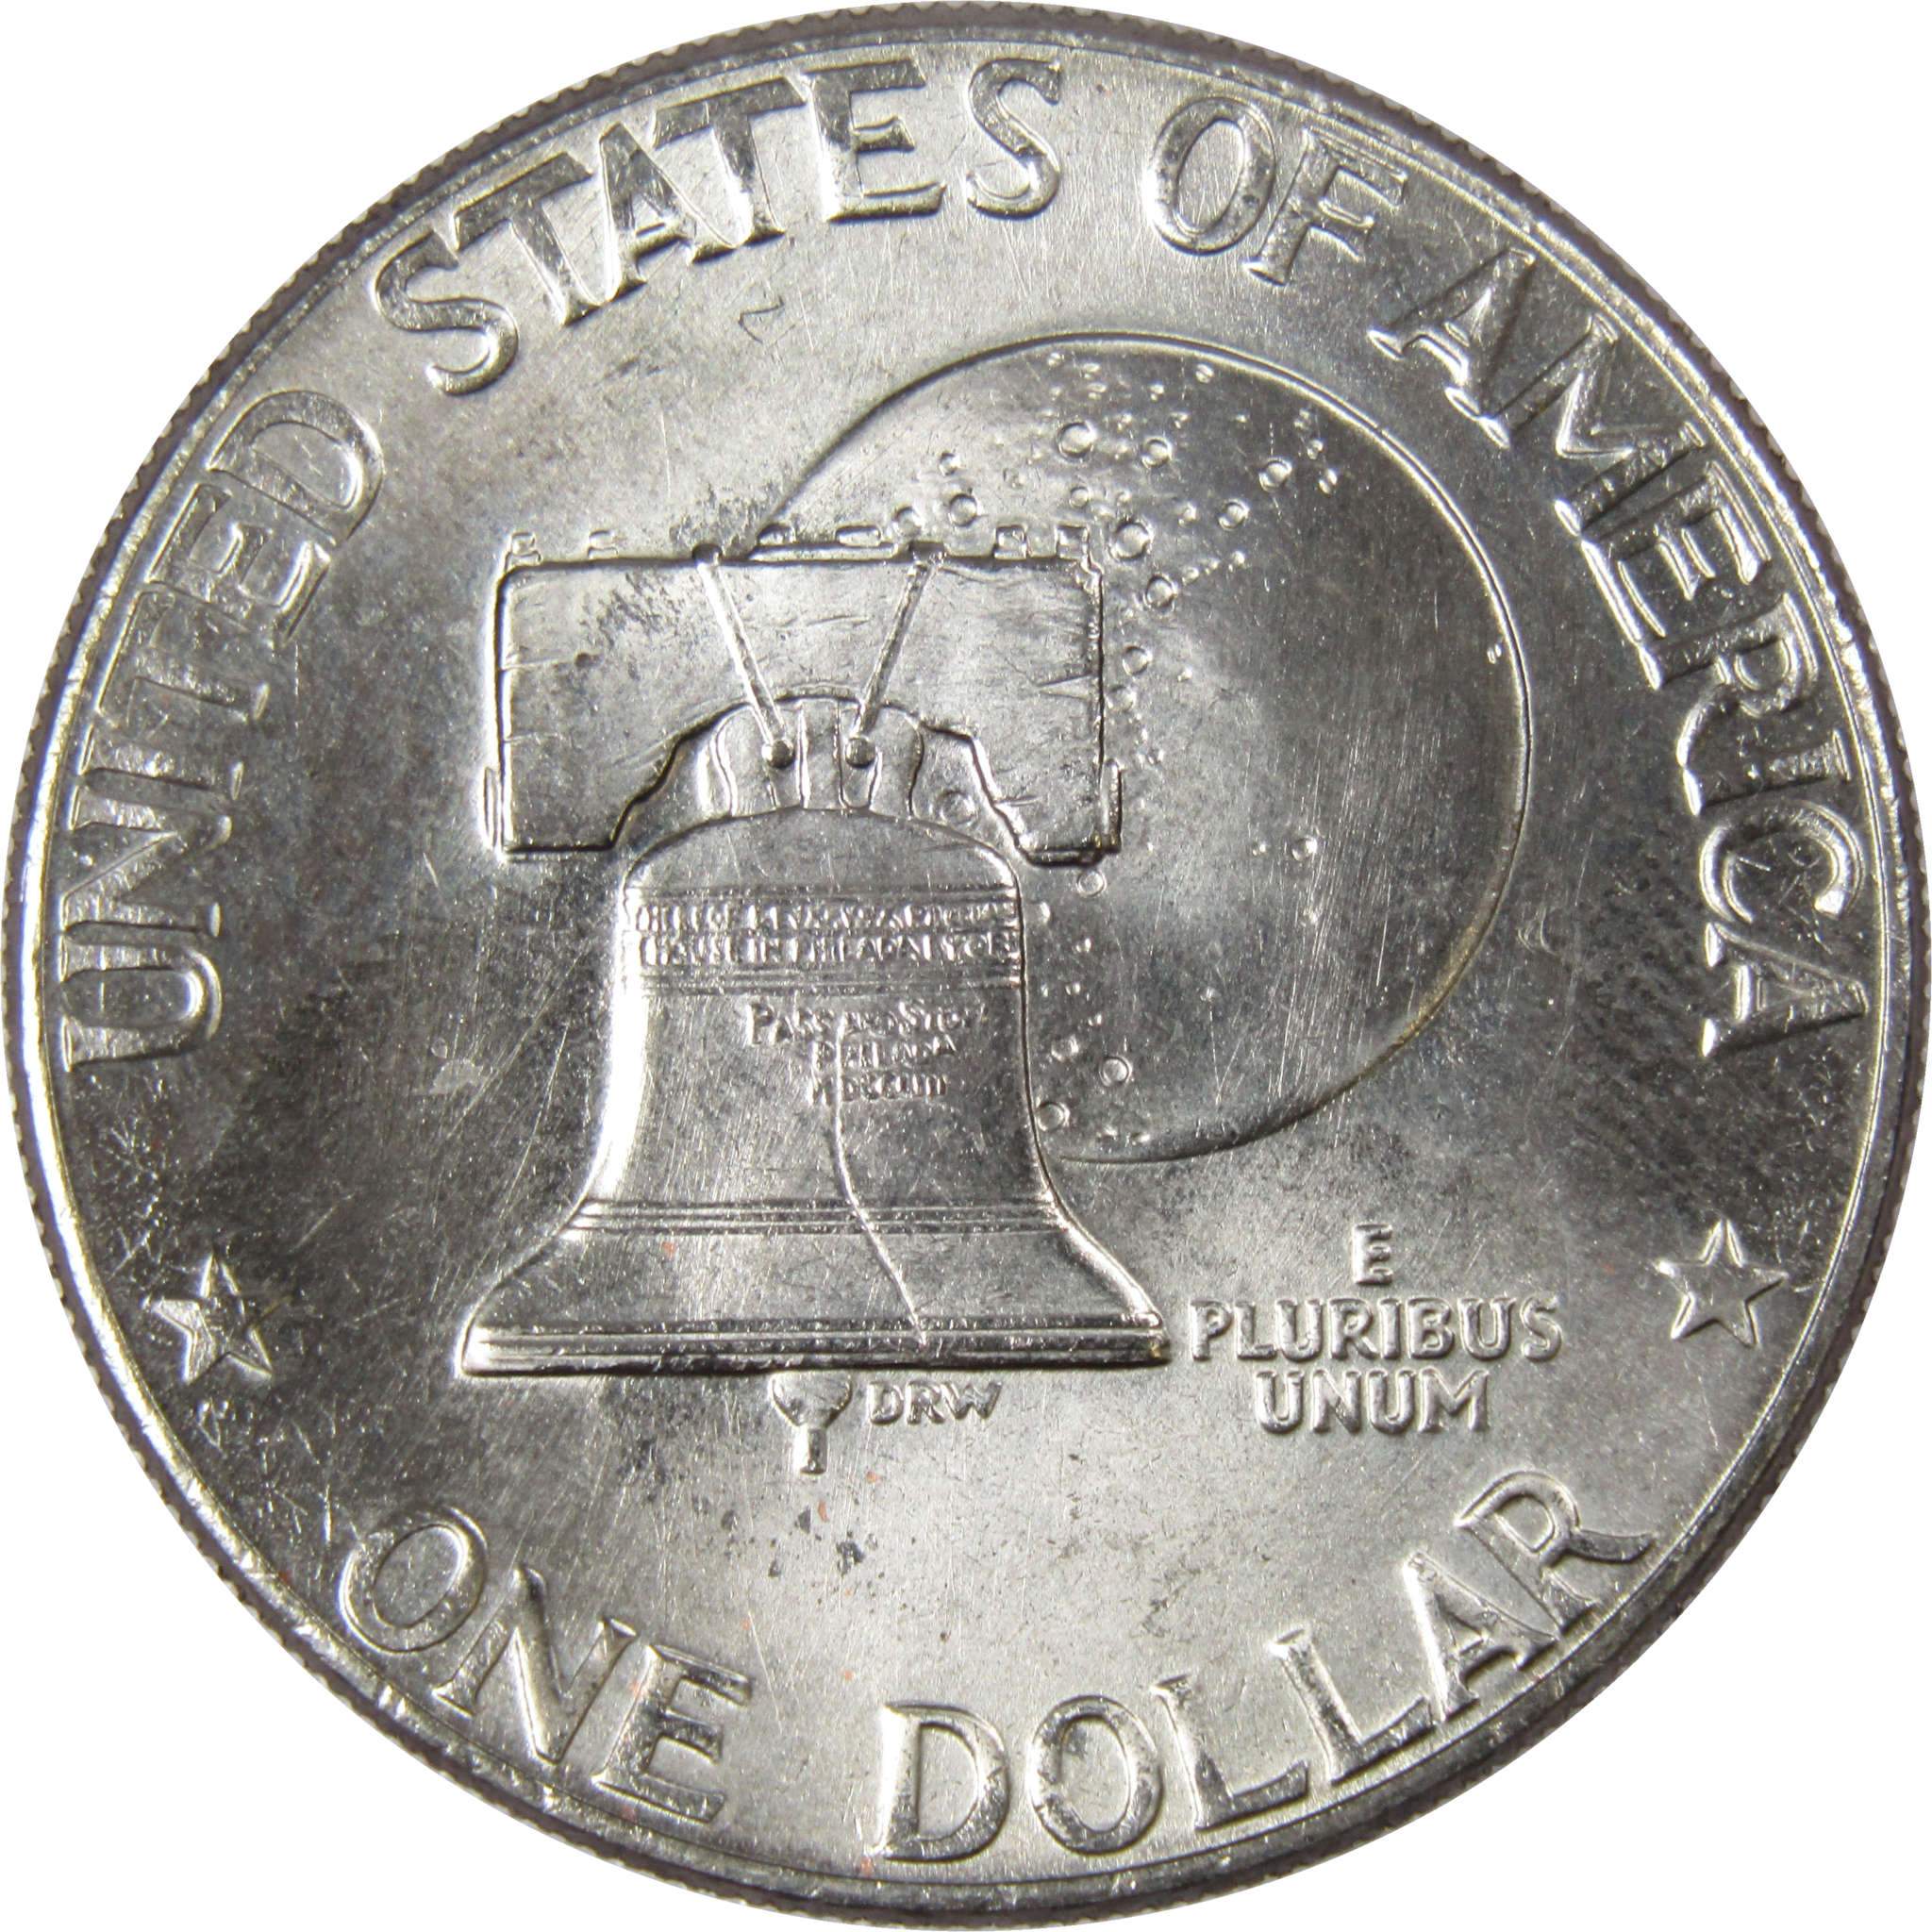 1976 D Type 2 Eisenhower Bicentennial Dollar BU Uncirculated Clad IKE $1 Coin